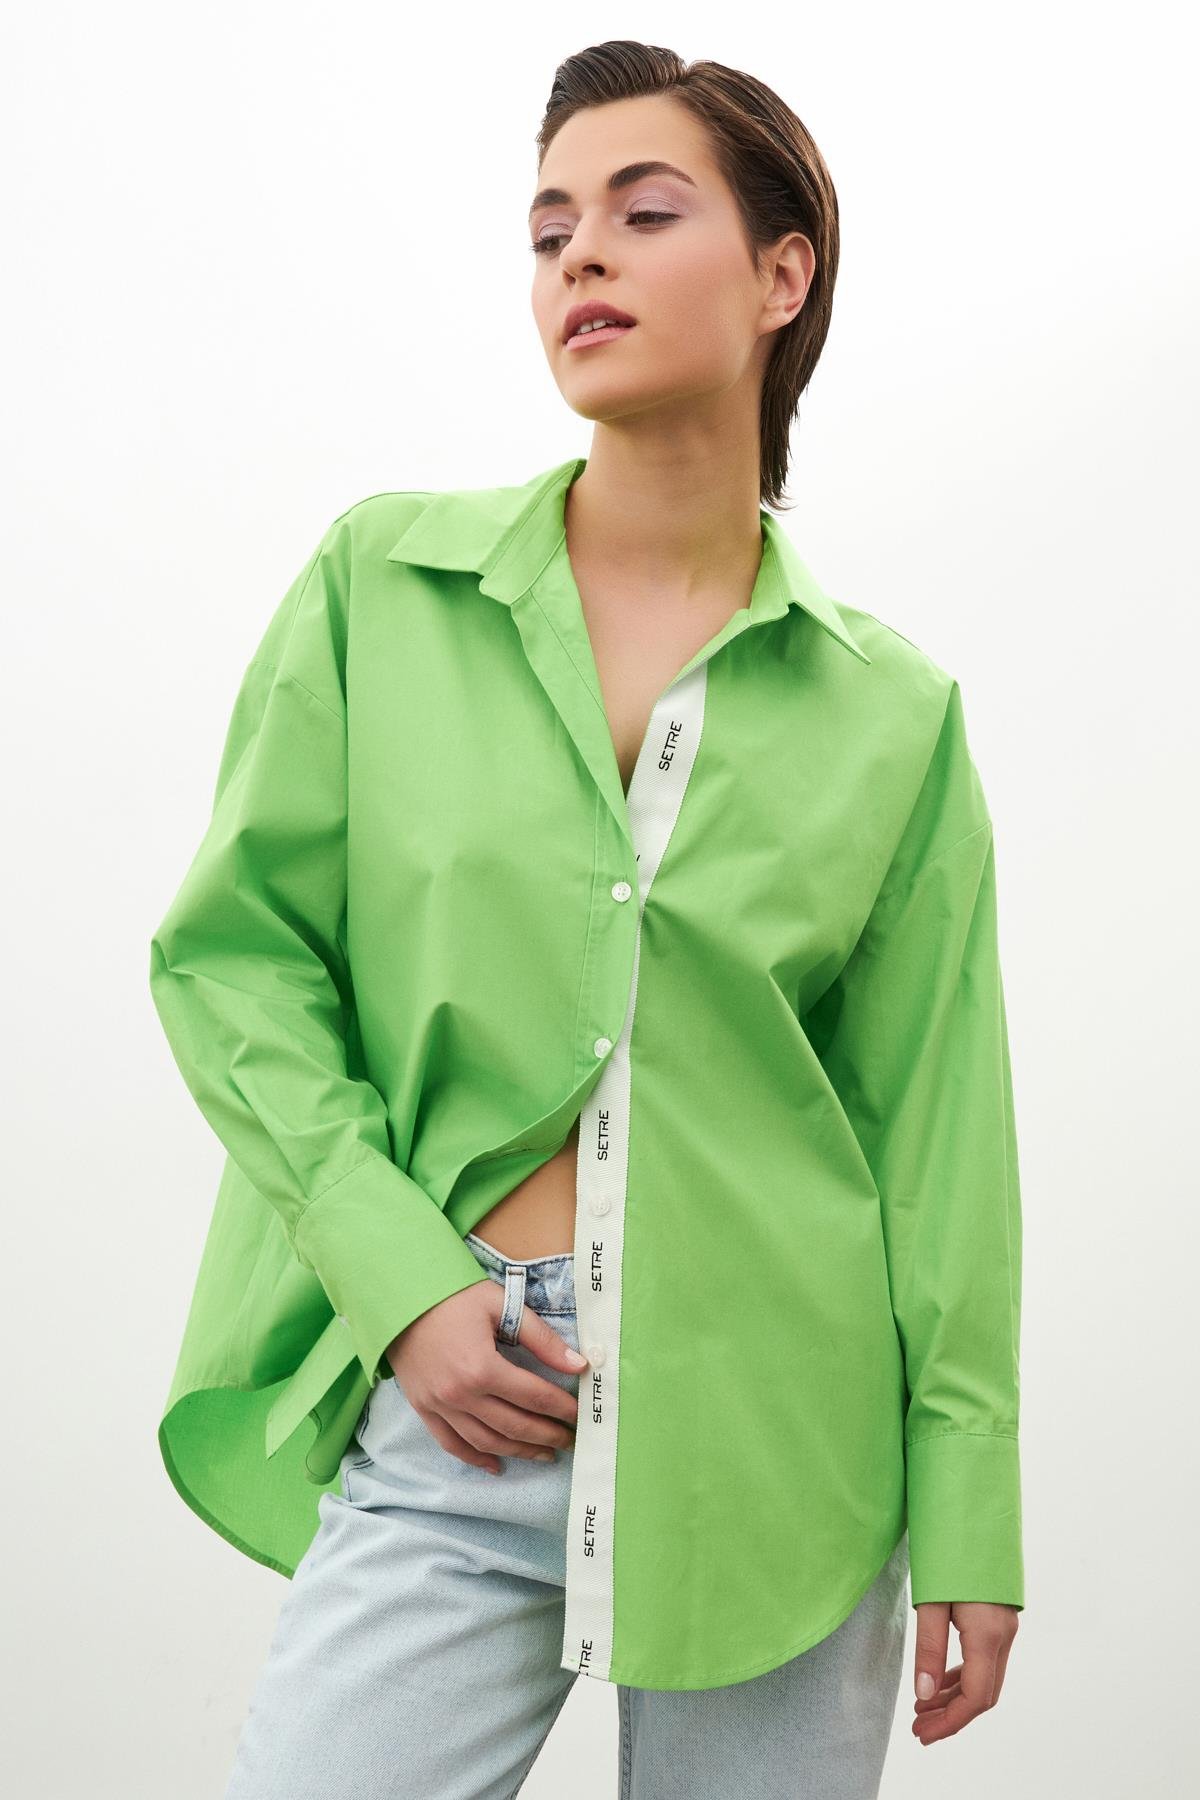 Kadın Yeşil Gömlek Yaka Uzun Kollu Düğme Kapamalı Gömlek ST090W55361002 |  Setre